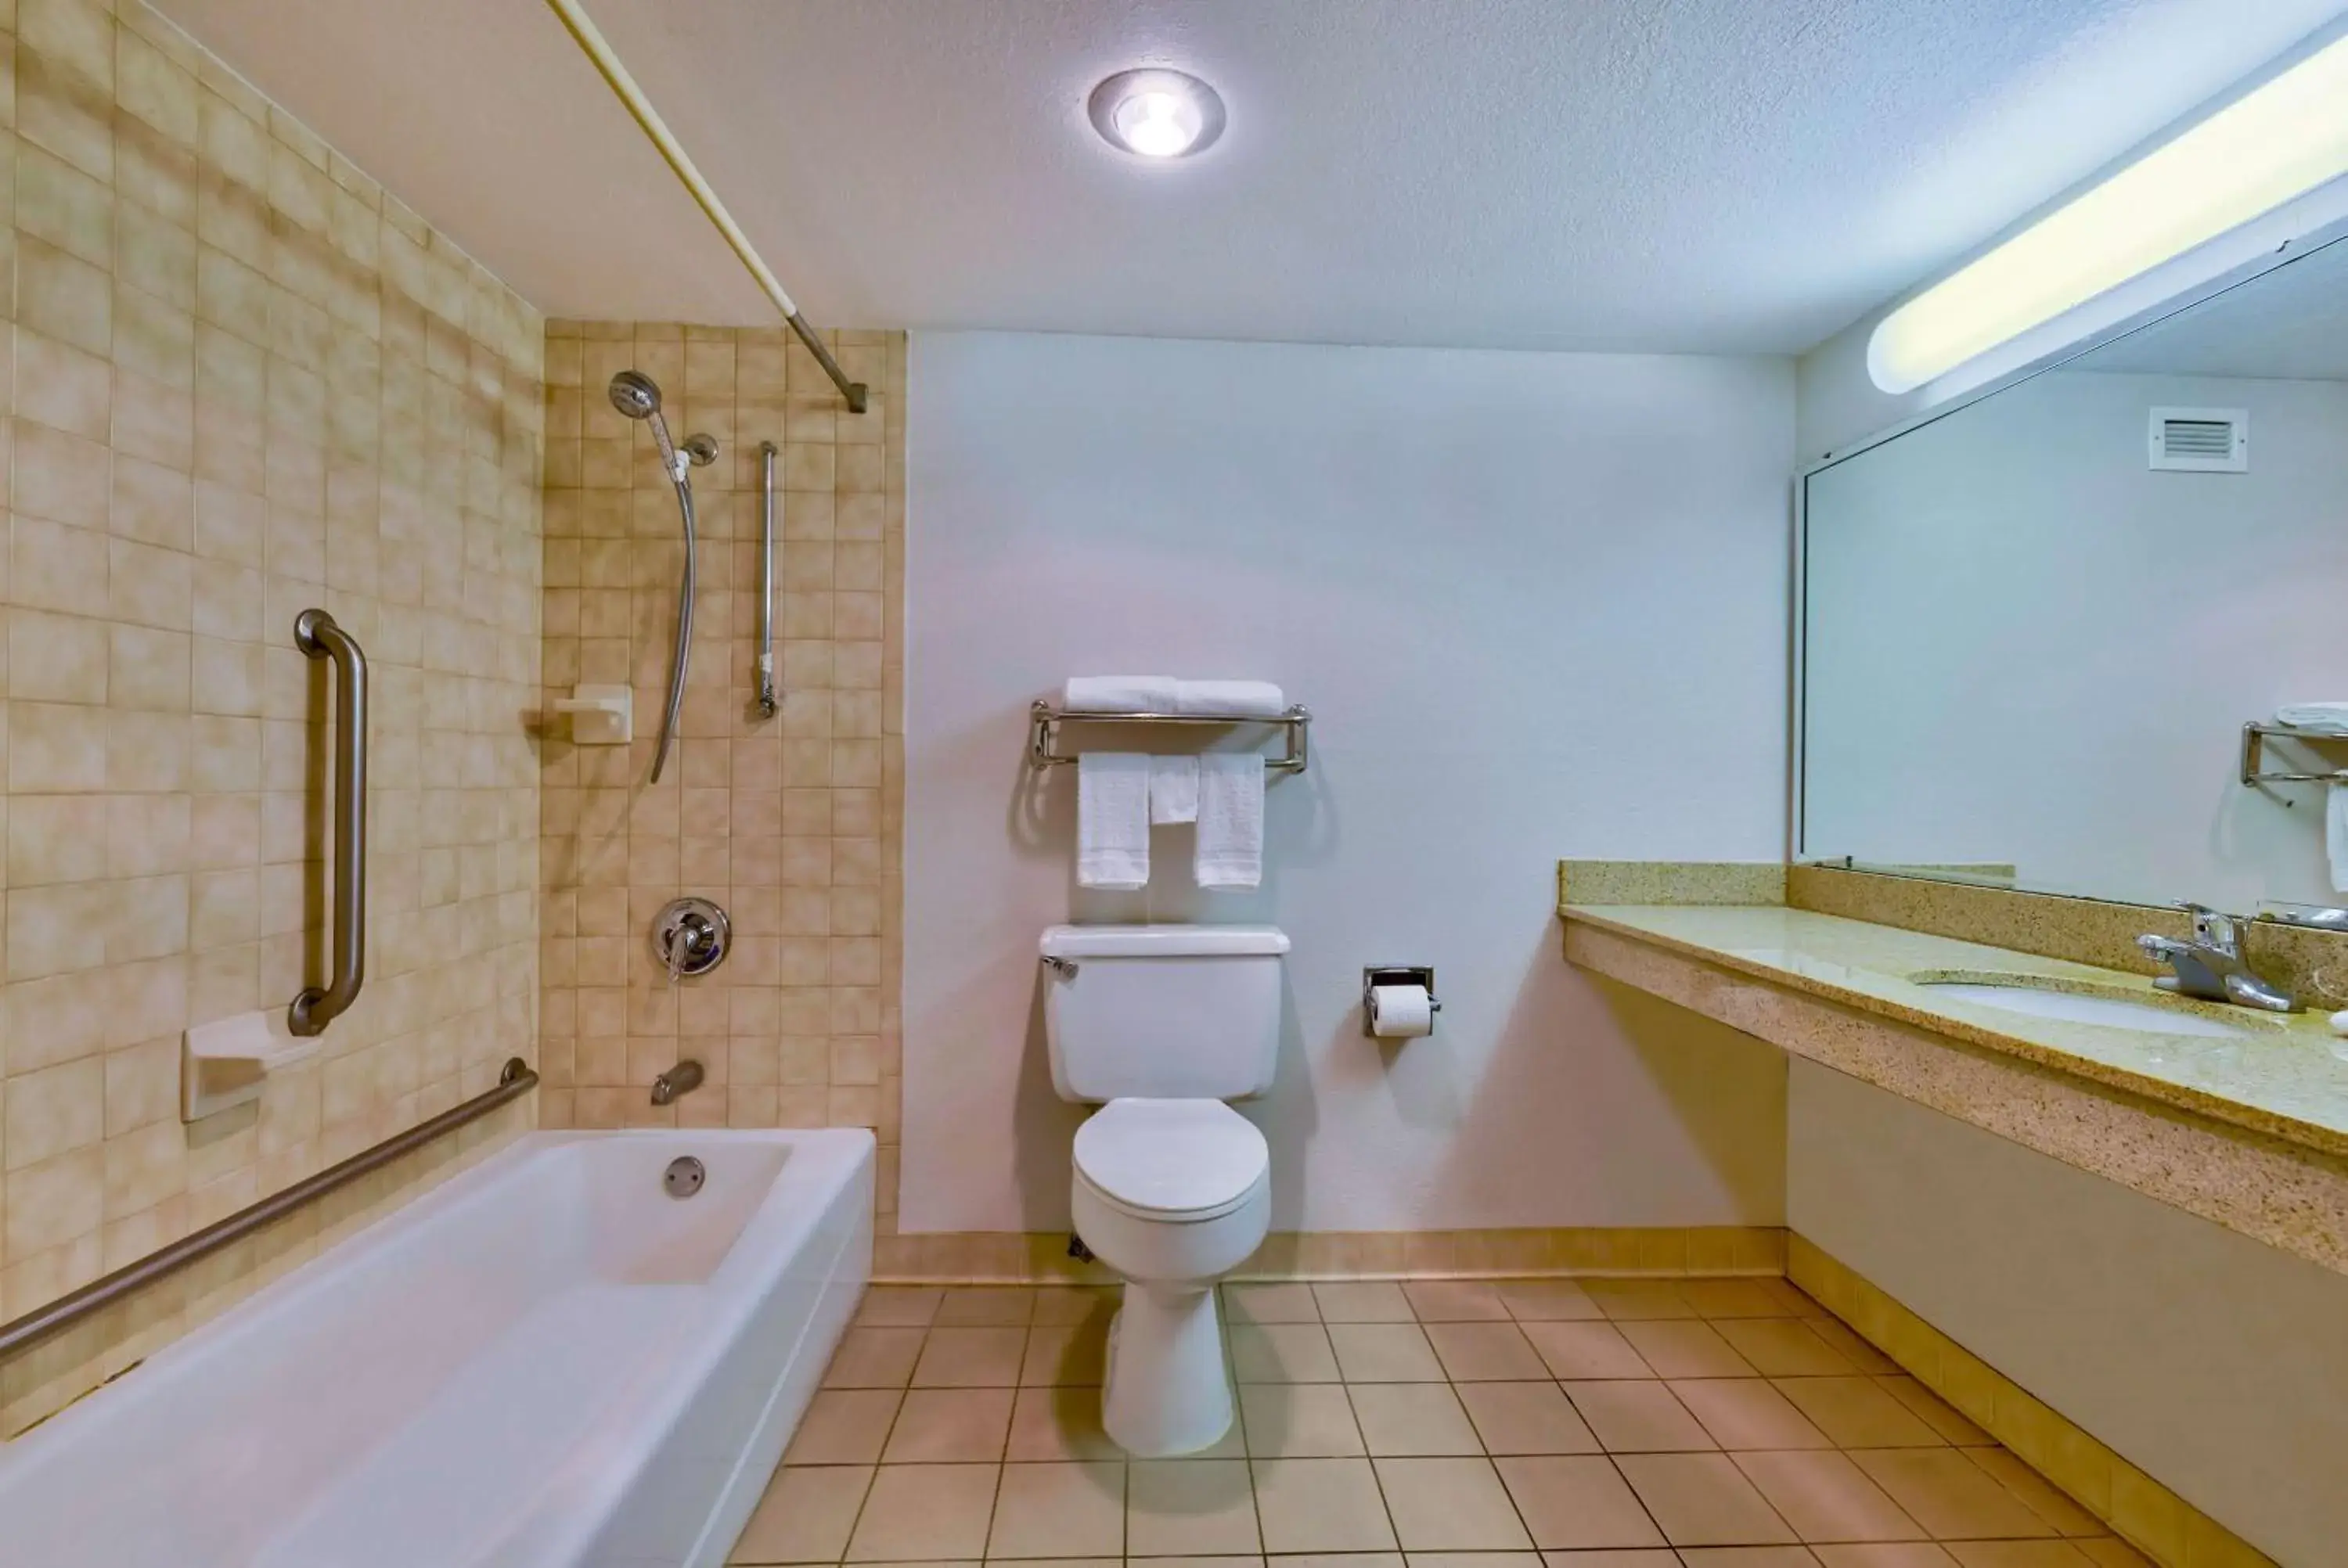 Bathroom in Motel 6 - Bartlesville, OK